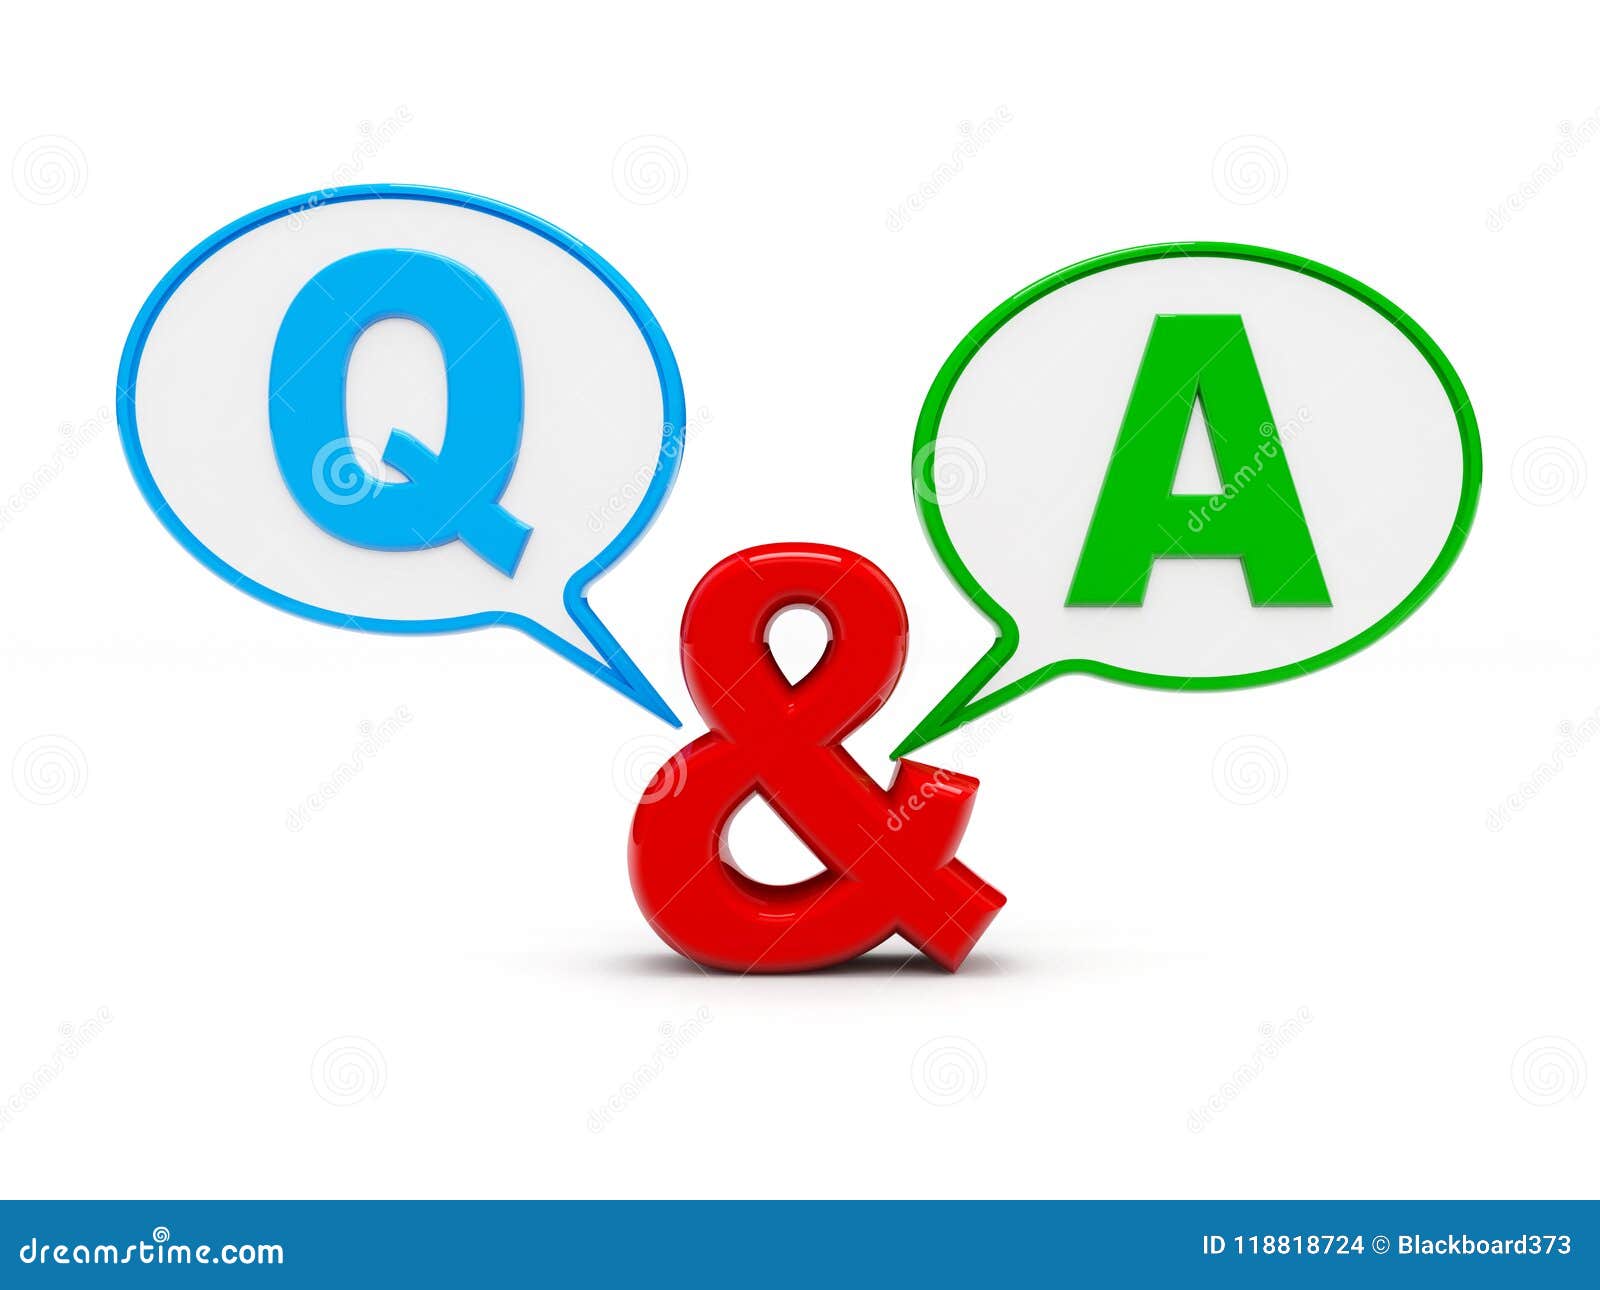 Questionnaire q chat M